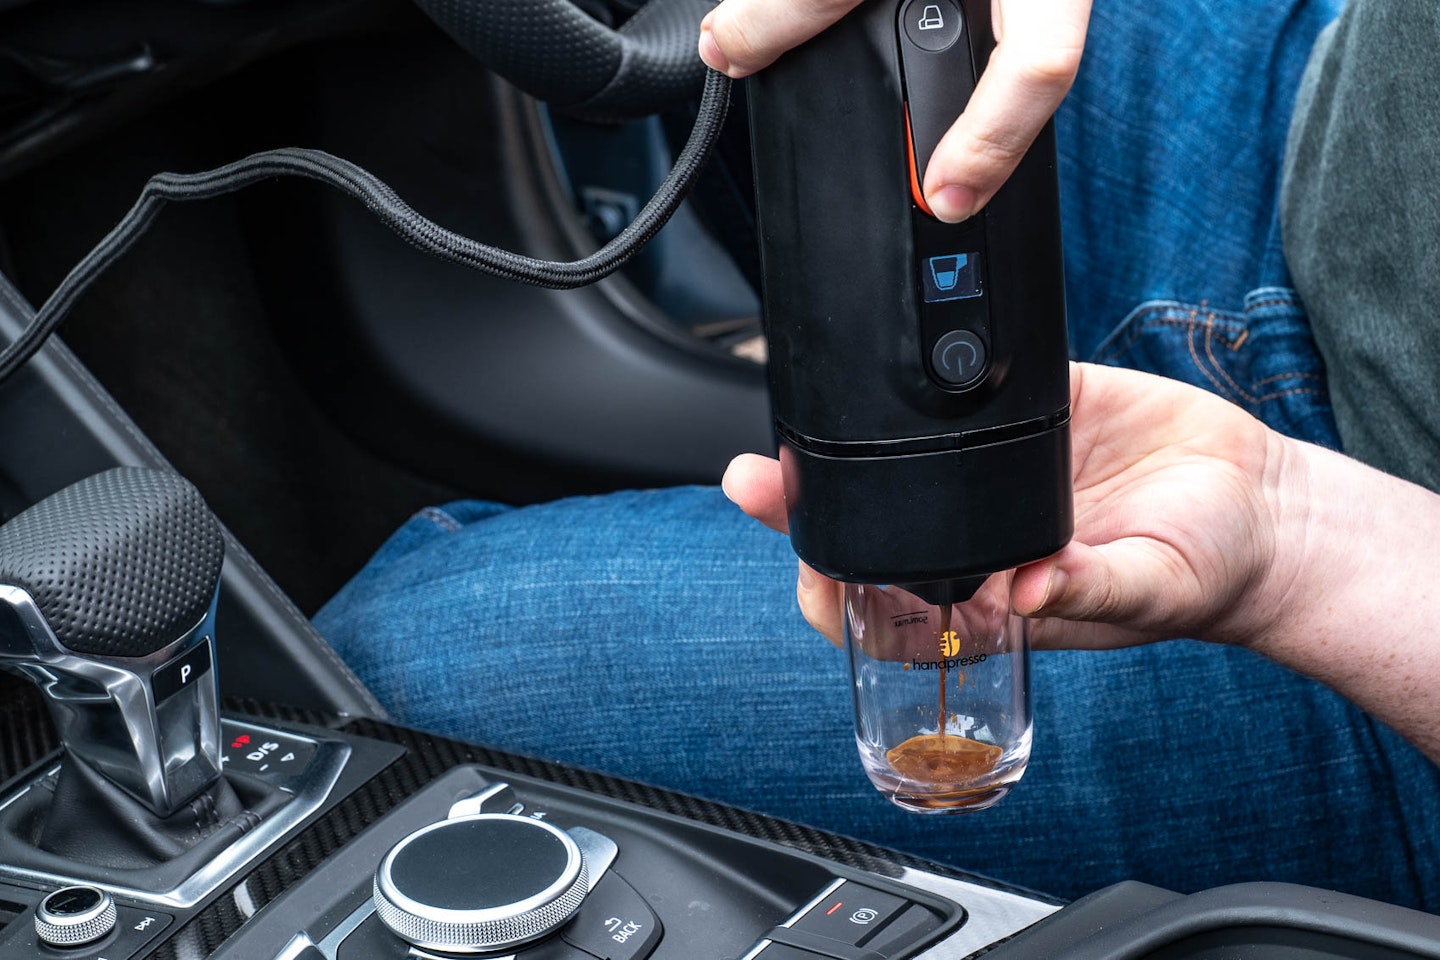 Handpresso Auto Capsule Portable Coffee Maker tested in an Audi R8